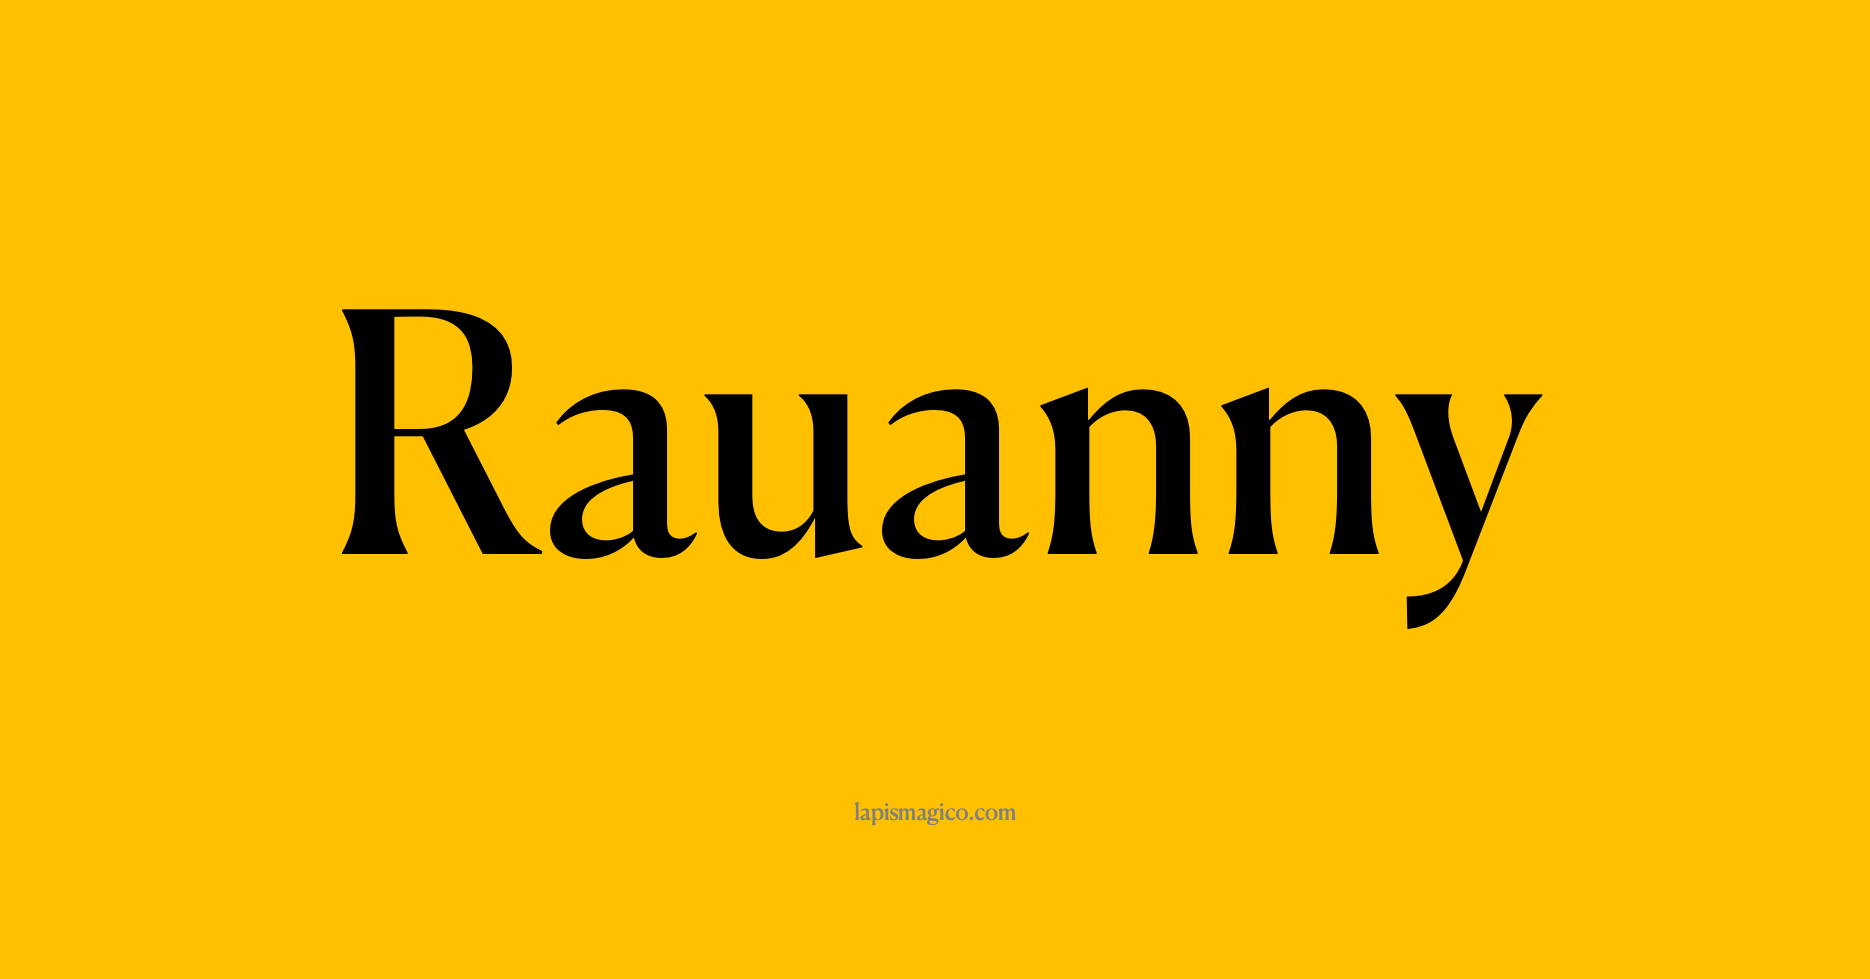 Nome Rauanny, ficha divertida com pontilhado para crianças